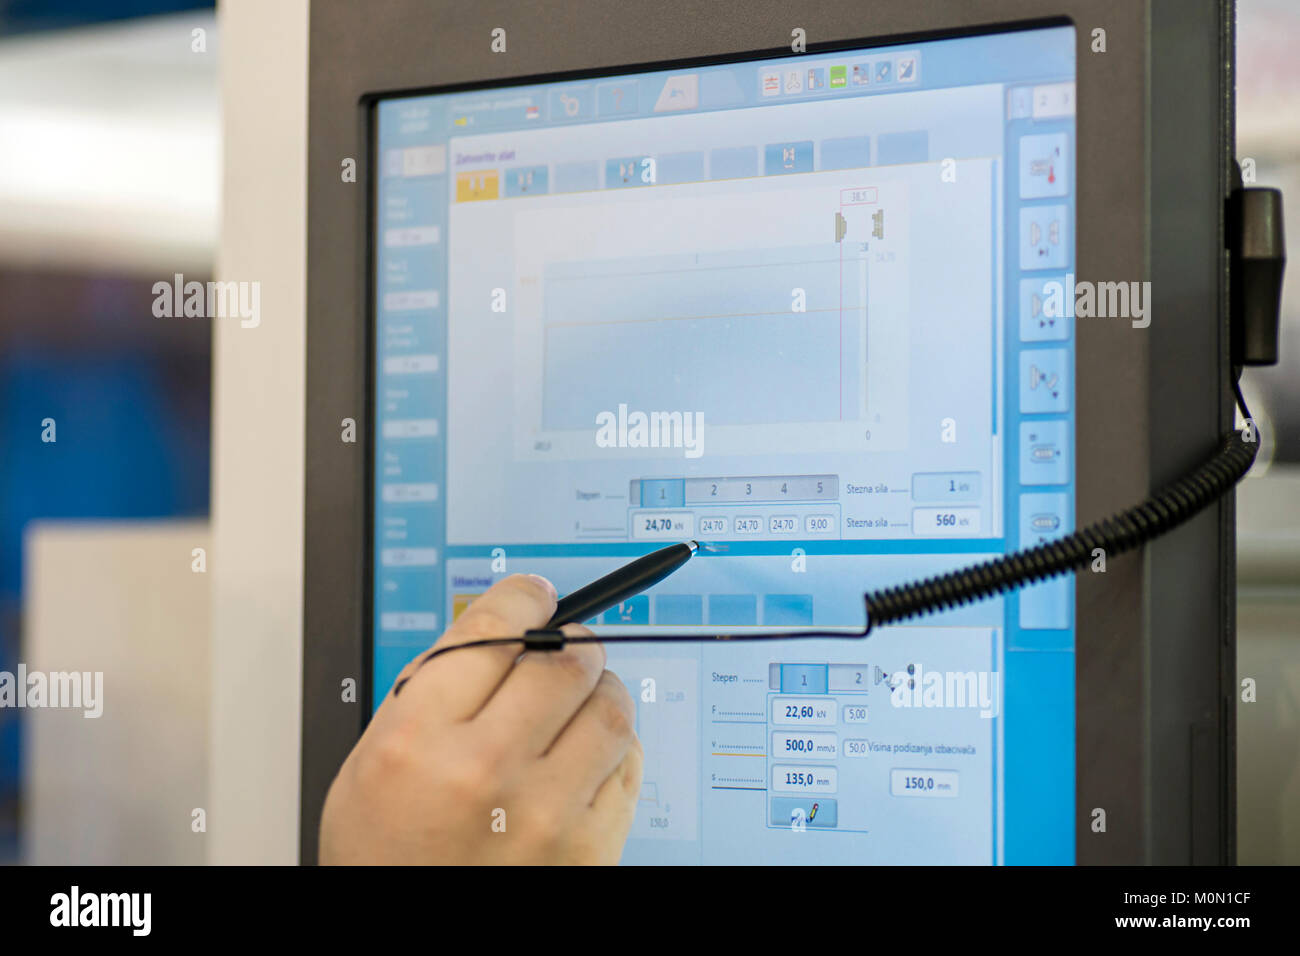 La main avec un stylo sur une console avec écran tactile pour contrôler une machine industrielle dans une usine Banque D'Images